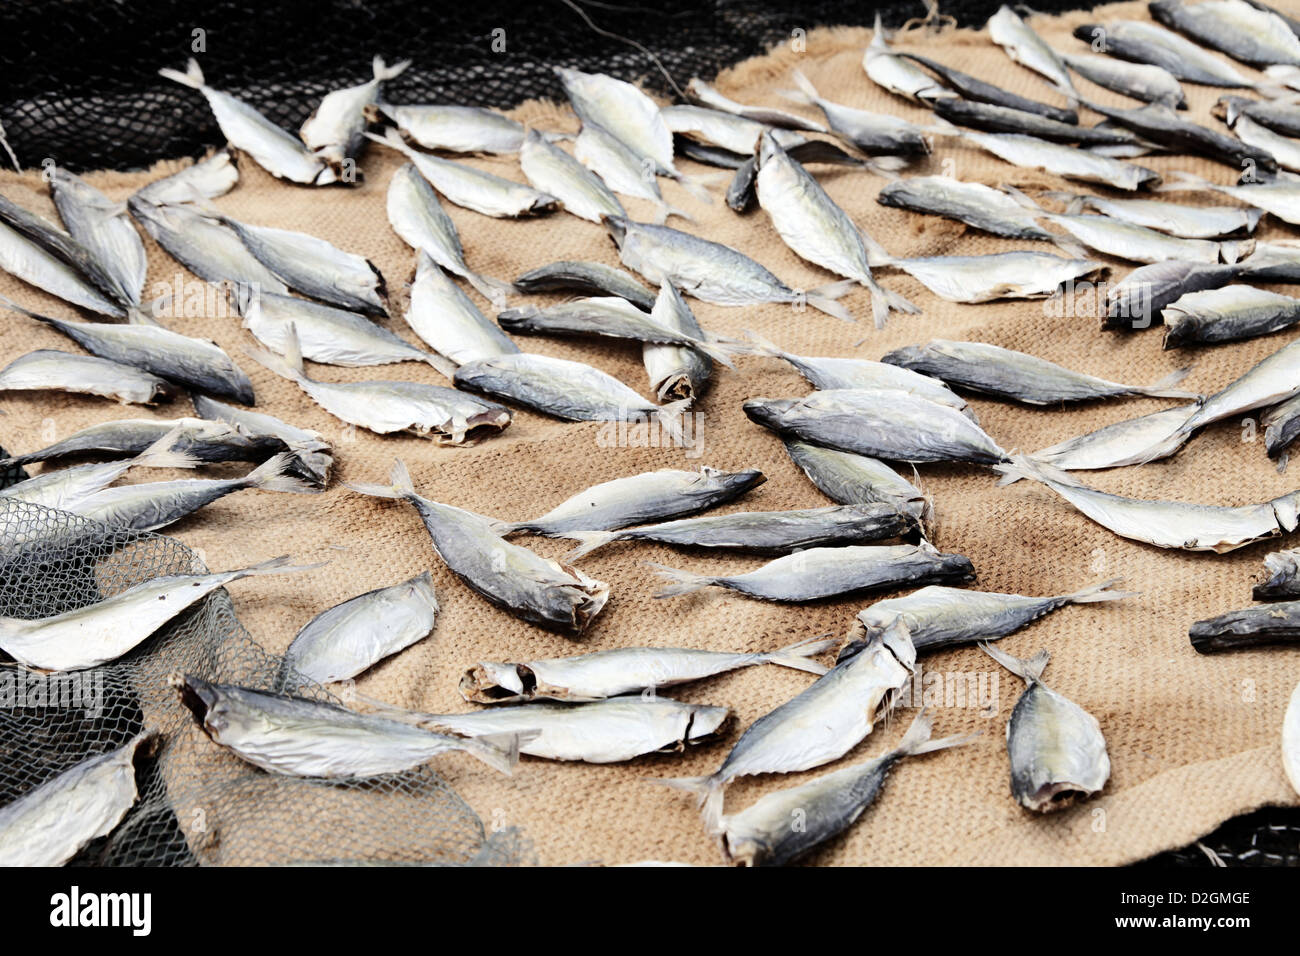 Es ist ein Foto von vielen Fischen als trocken unter der Sonne und der IND., ist es zur Vorbereitung Verkauf trocken bekommen. Ist ist im Hafen Stockfoto